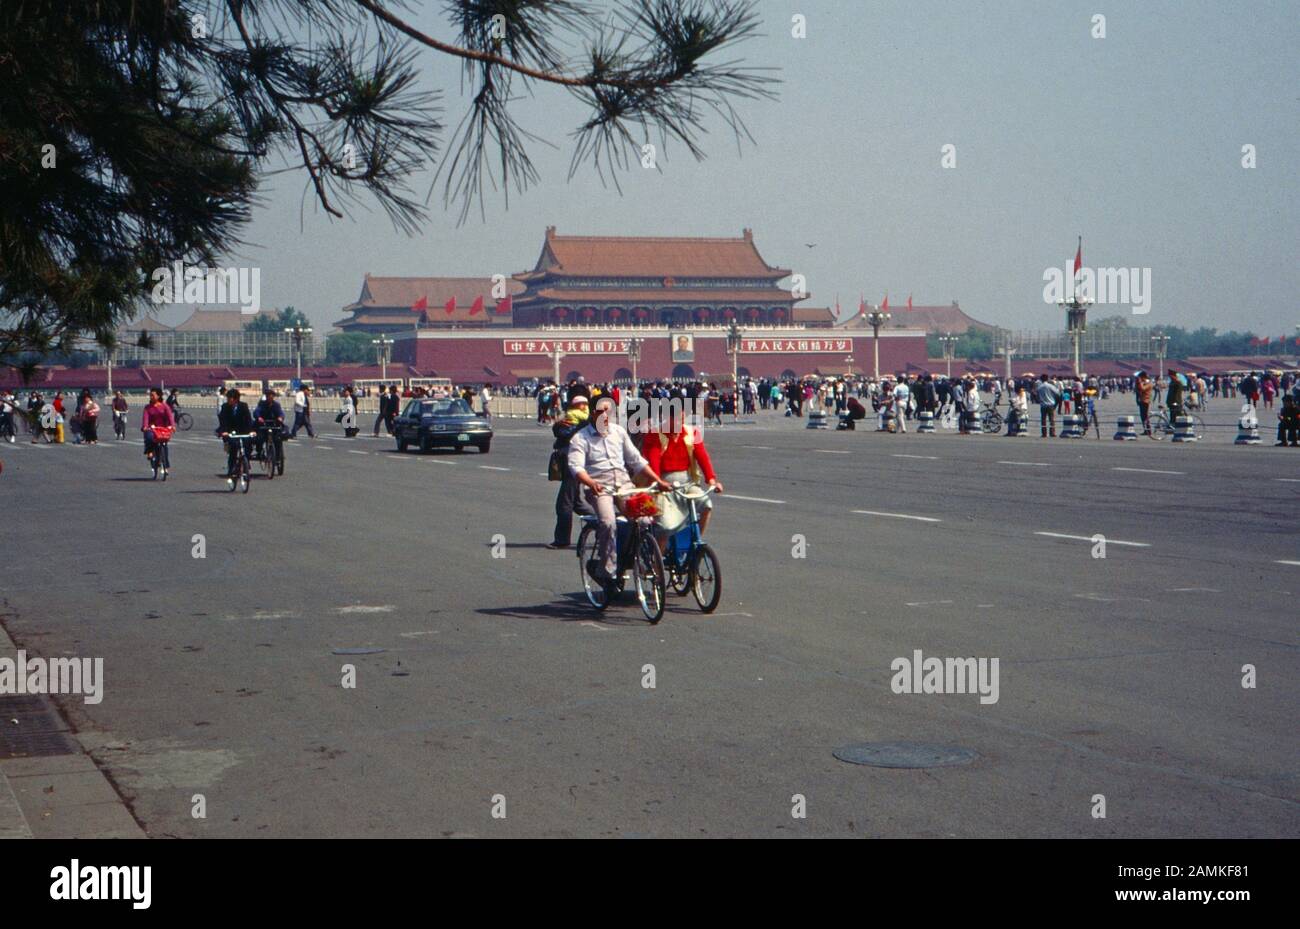 Fahrradfahrer im Straßenverkehr auf dem Platz des Himmlischen Friedens in Peking, China 1980er Jahre. Bicycle riders in the traffic of the city of Beijing on Tiananmen Square, China 1980s. Stock Photo